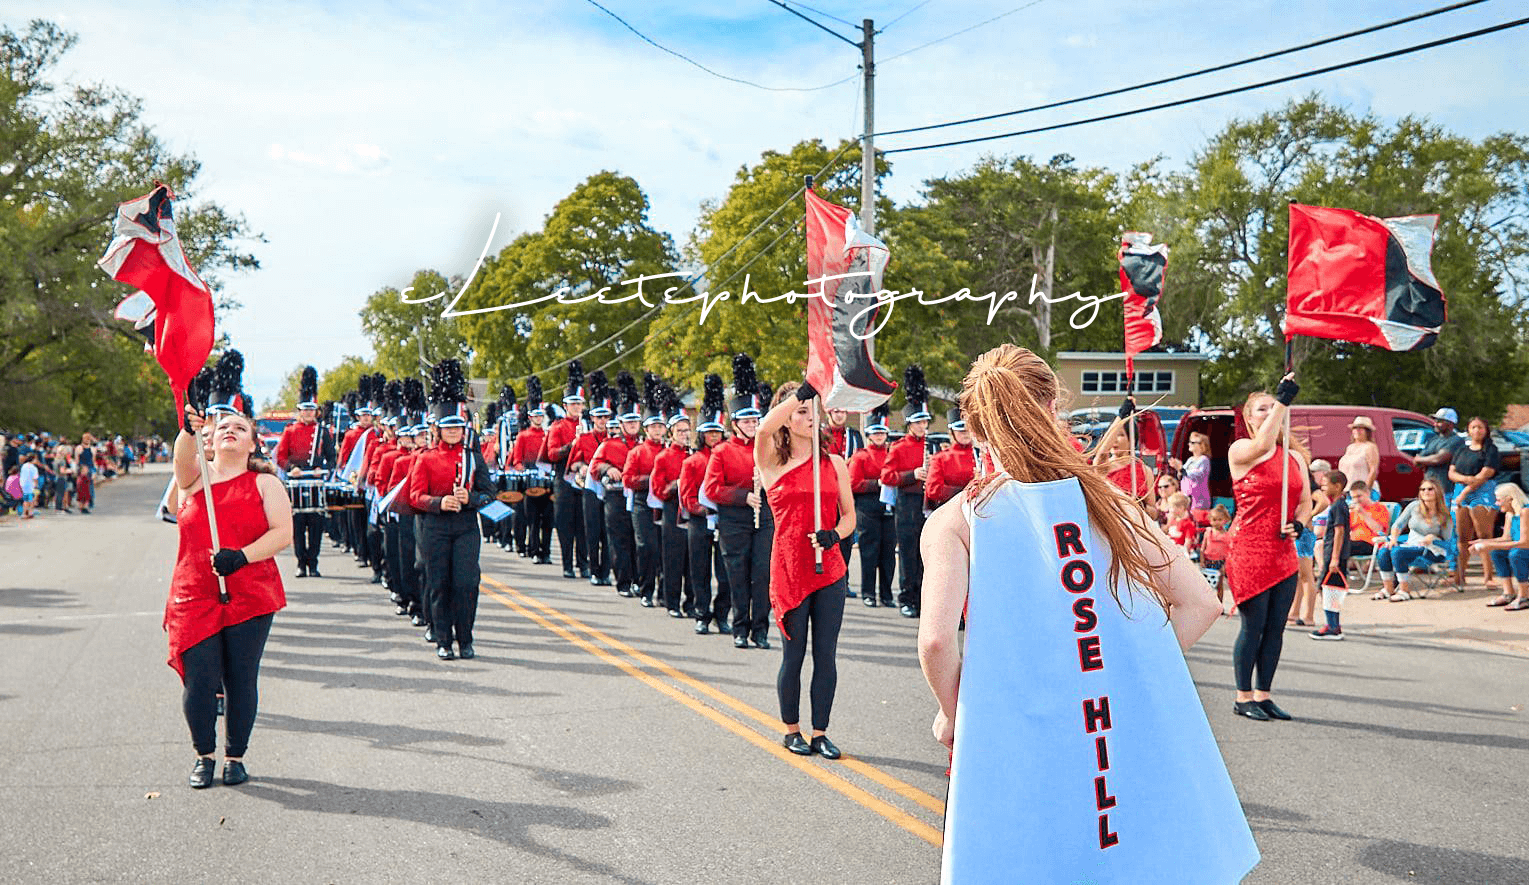 High School Band at the parade